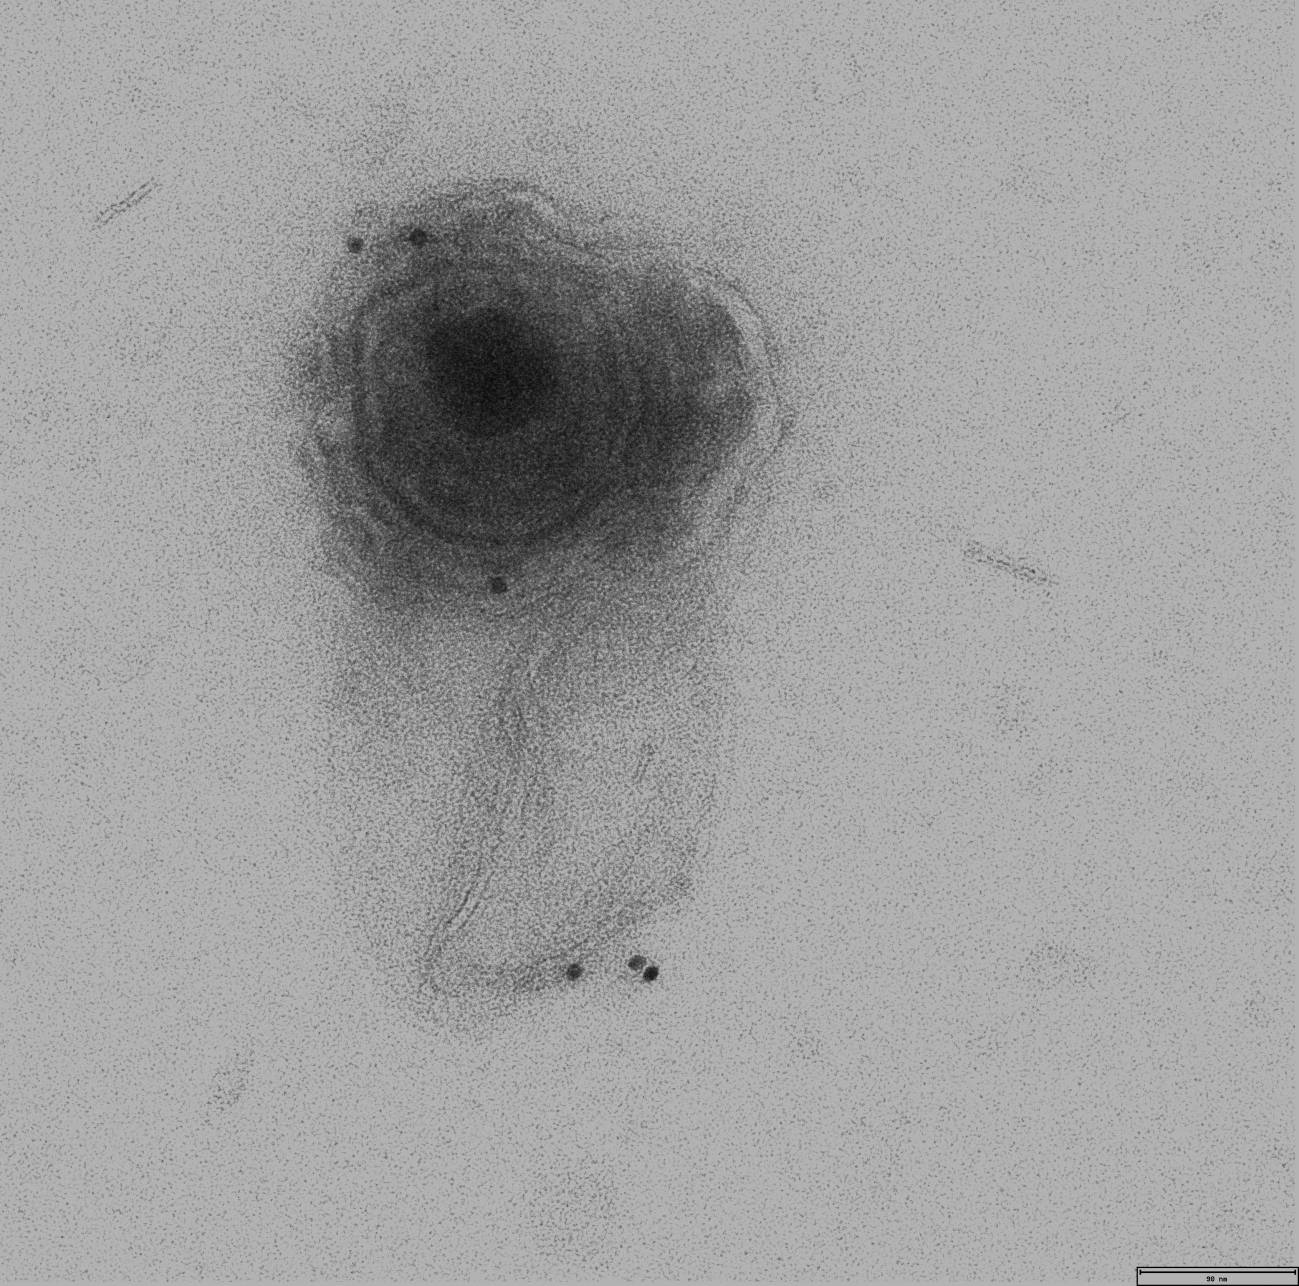 microvesícula conteniendo un virión